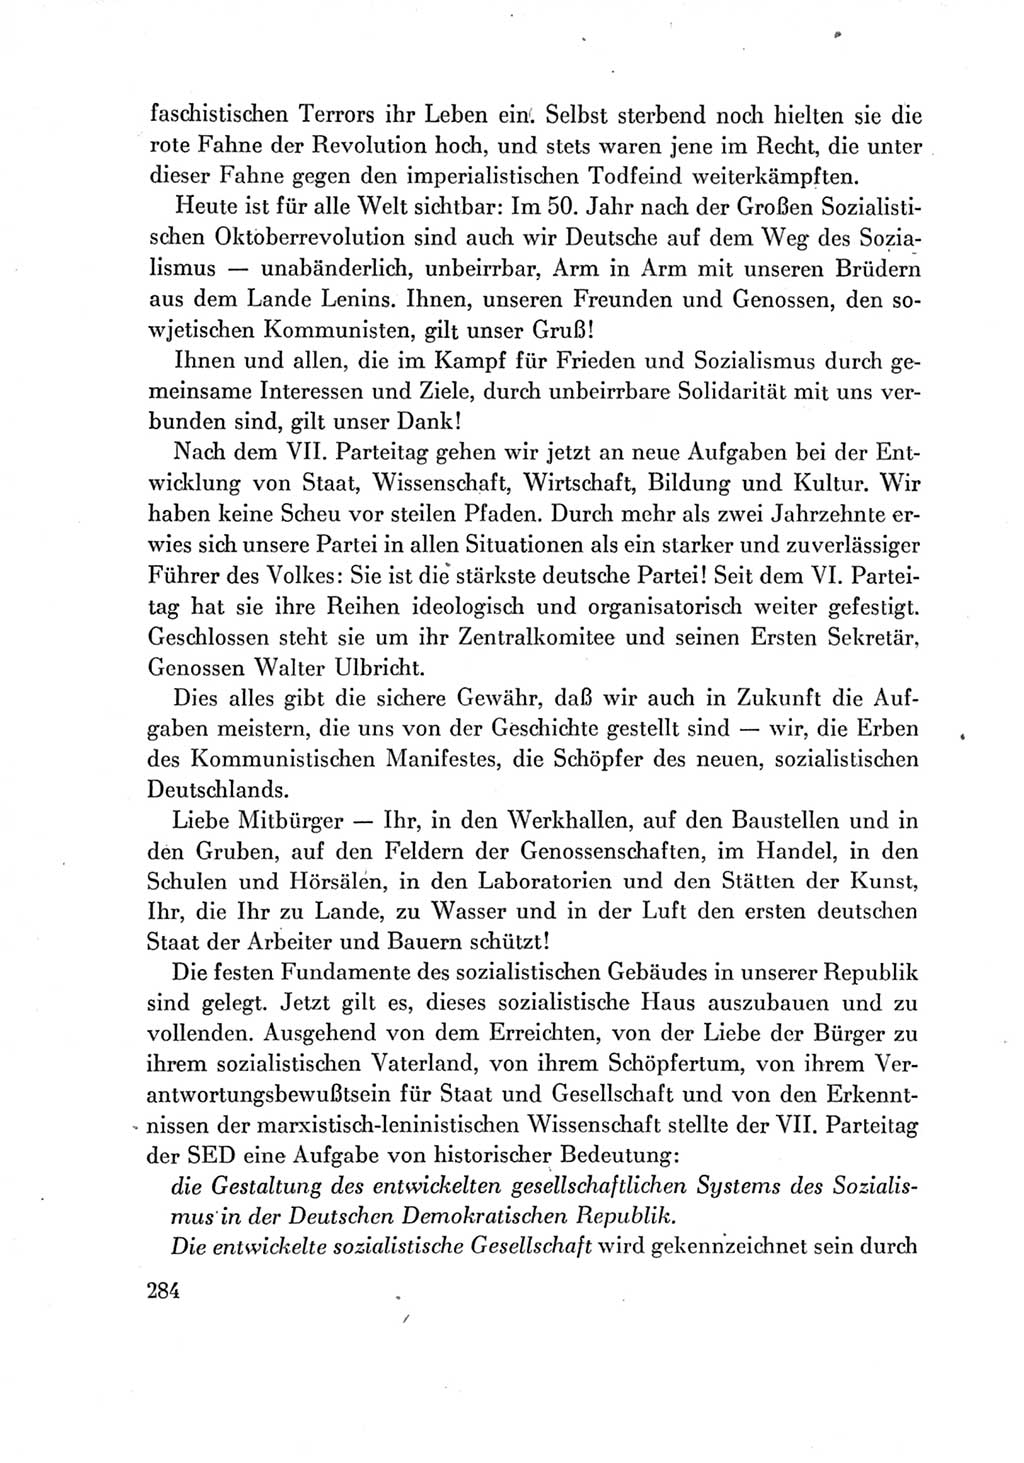 Protokoll der Verhandlungen des Ⅶ. Parteitages der Sozialistischen Einheitspartei Deutschlands (SED) [Deutsche Demokratische Republik (DDR)] 1967, Band Ⅳ, Seite 284 (Prot. Verh. Ⅶ. PT SED DDR 1967, Bd. Ⅳ, S. 284)